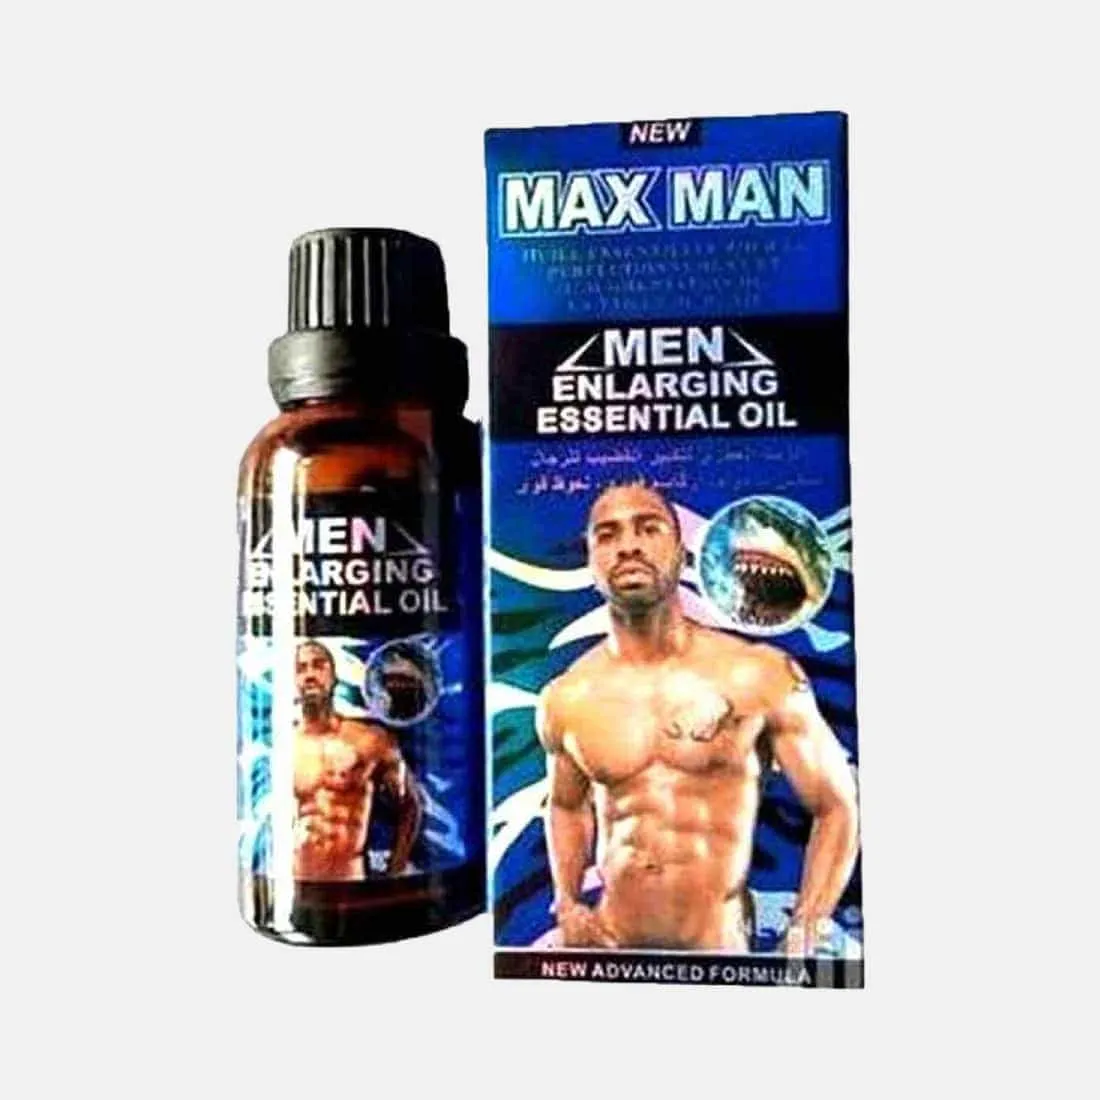 Max Men Enlargement Oil, Men's Essential Oil for Penis Enhan...